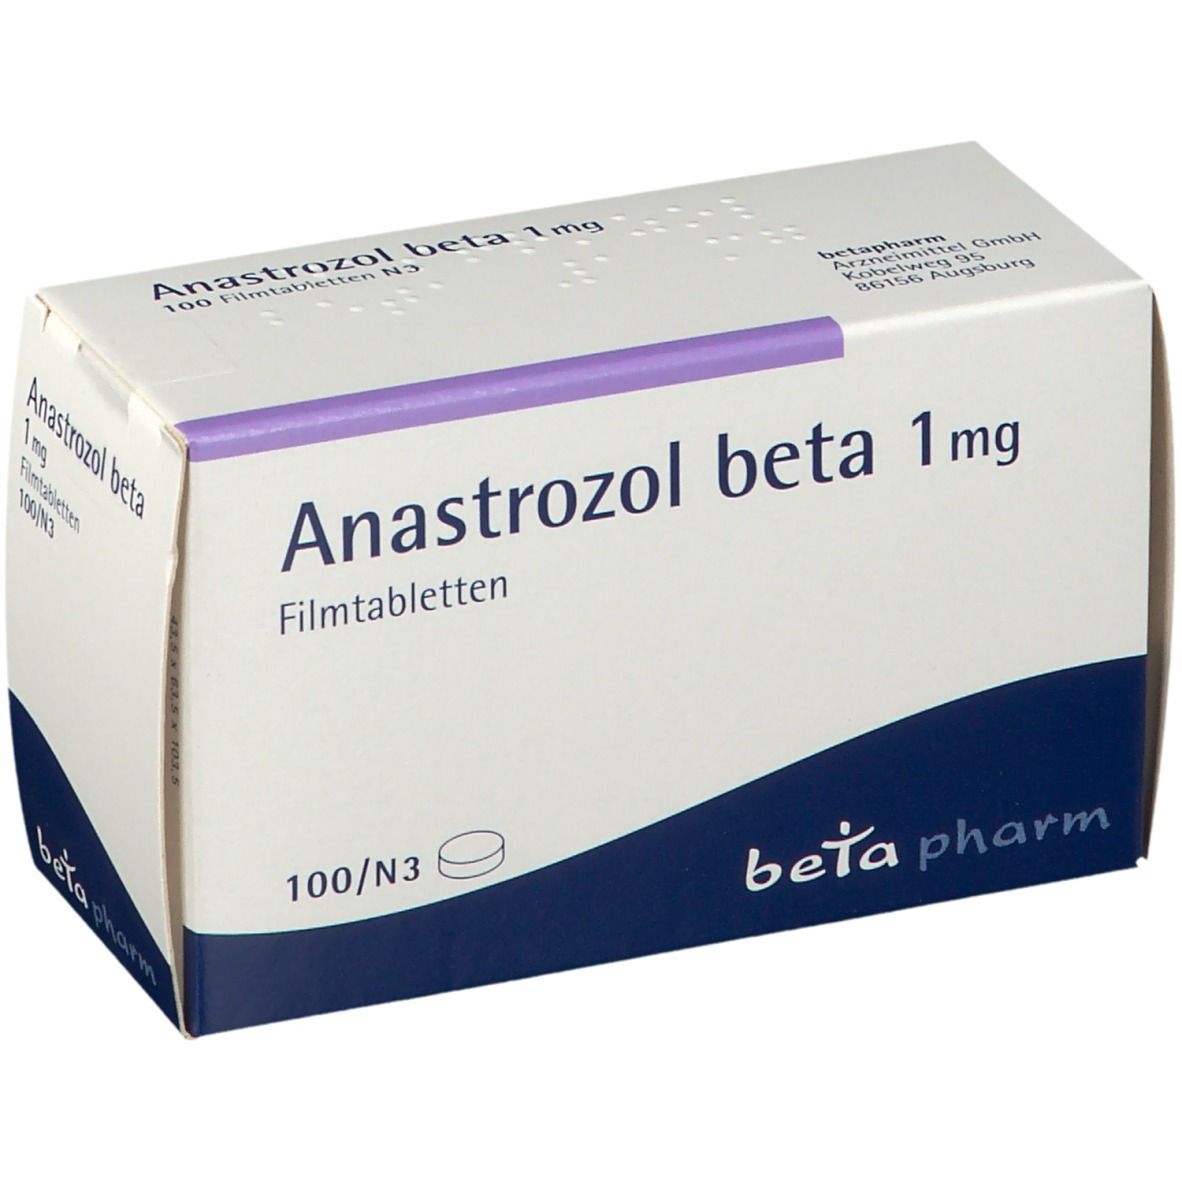 Anastrozol beta 1 mg Filmtabletten